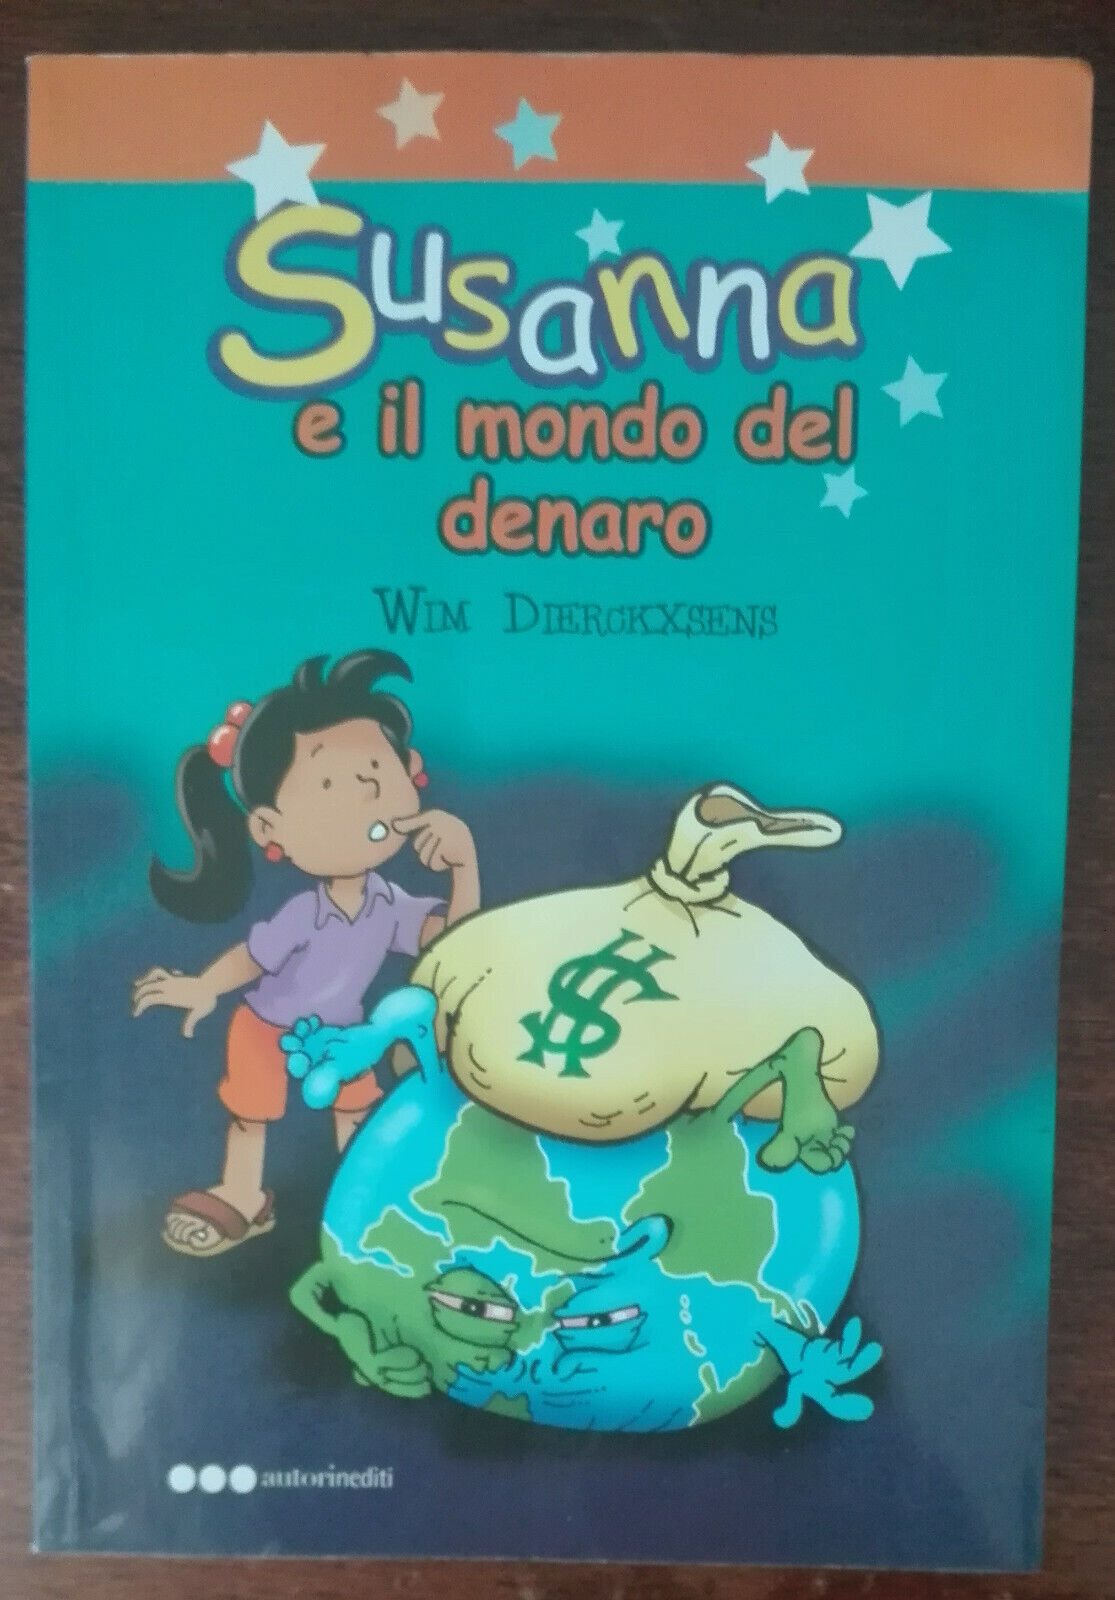 Susanna e il mondo del denaro - Wim Dierckxsens - Autorinediti,2011 - A